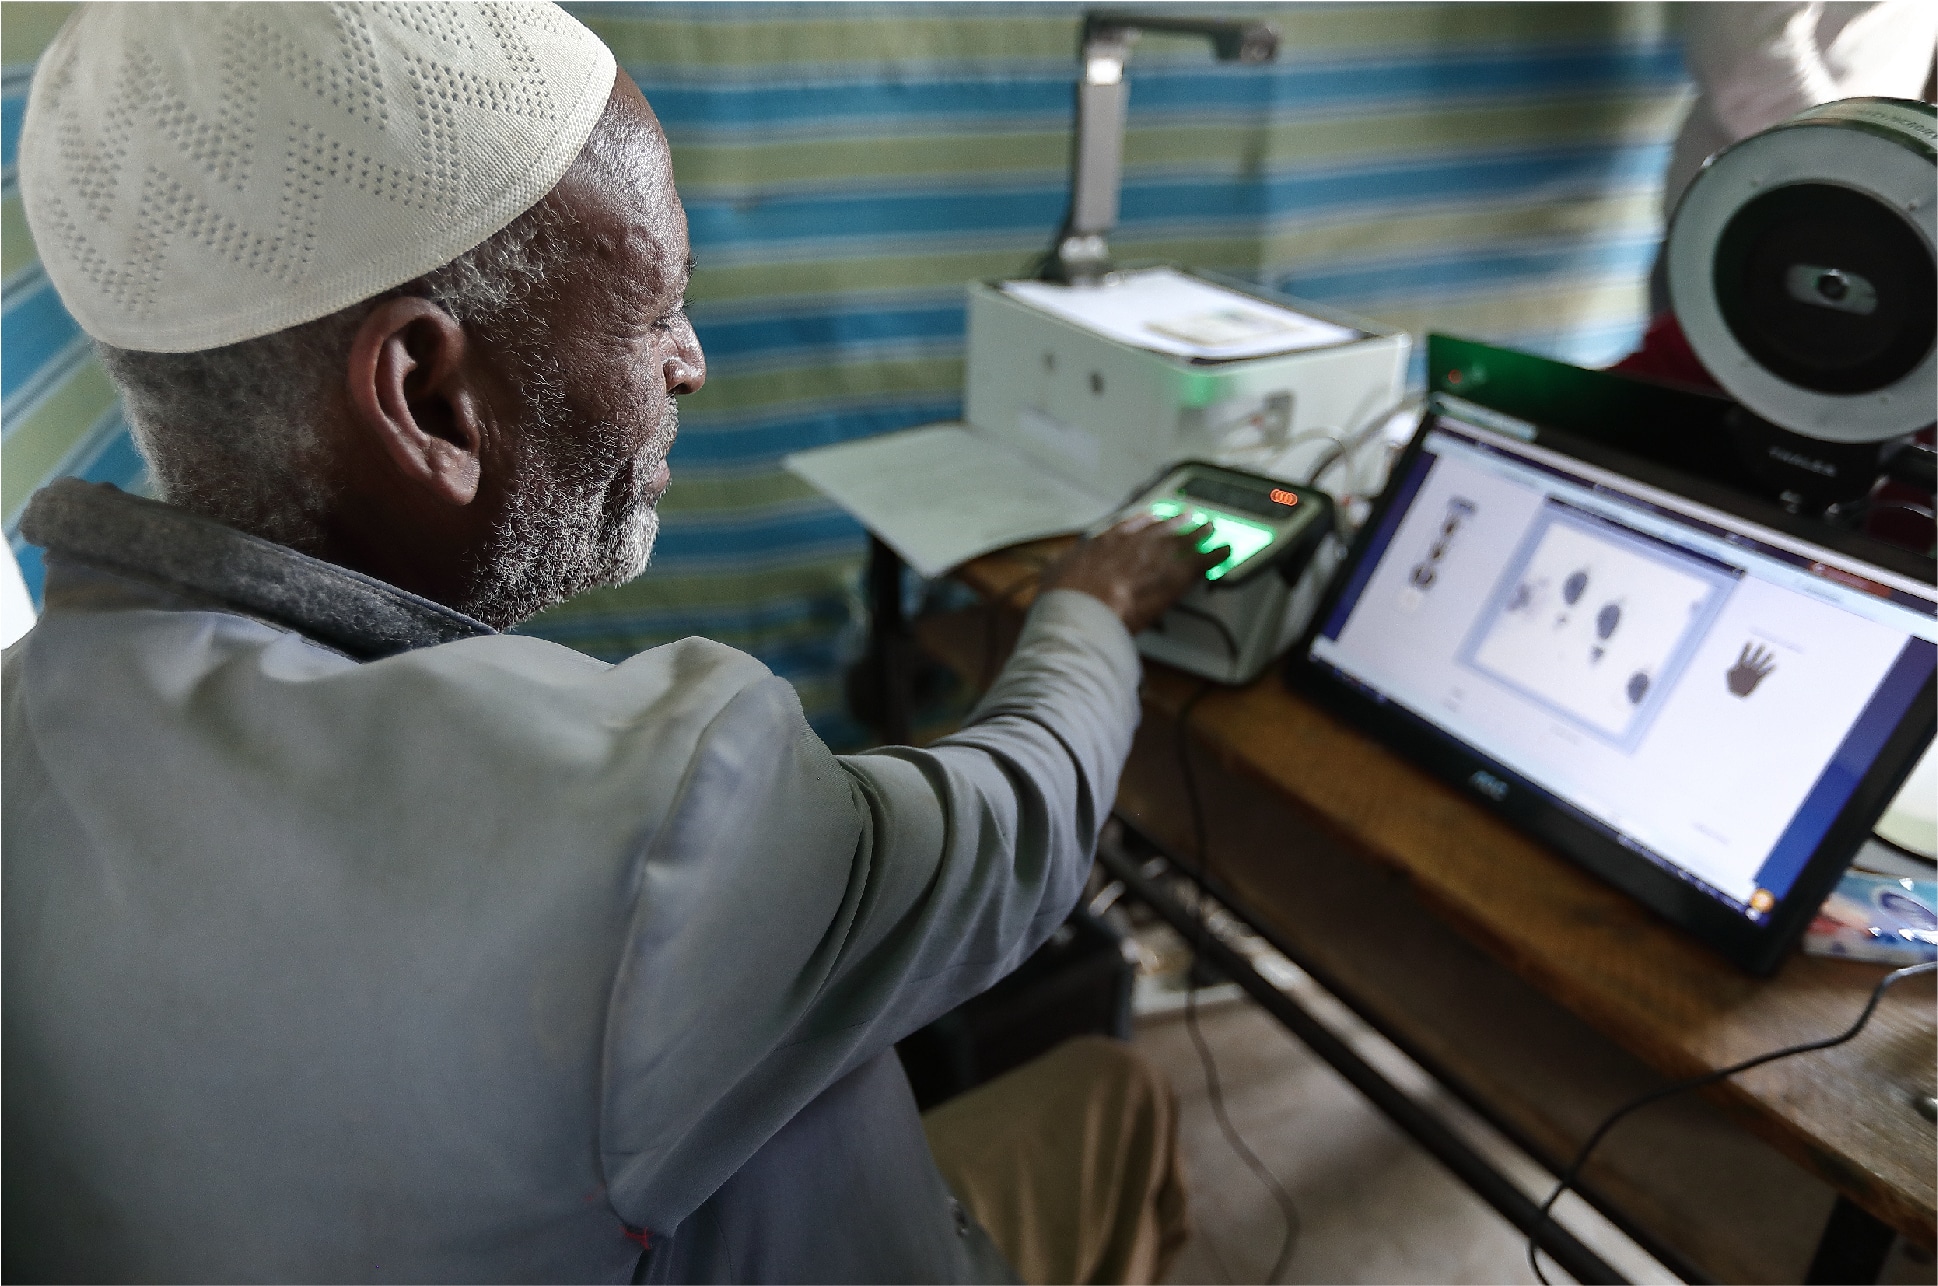 Etiópia kötelező digitális ID-t vezet be a kormányzati szolgáltatásokhoz való hozzáféréshez, kiemelt kép